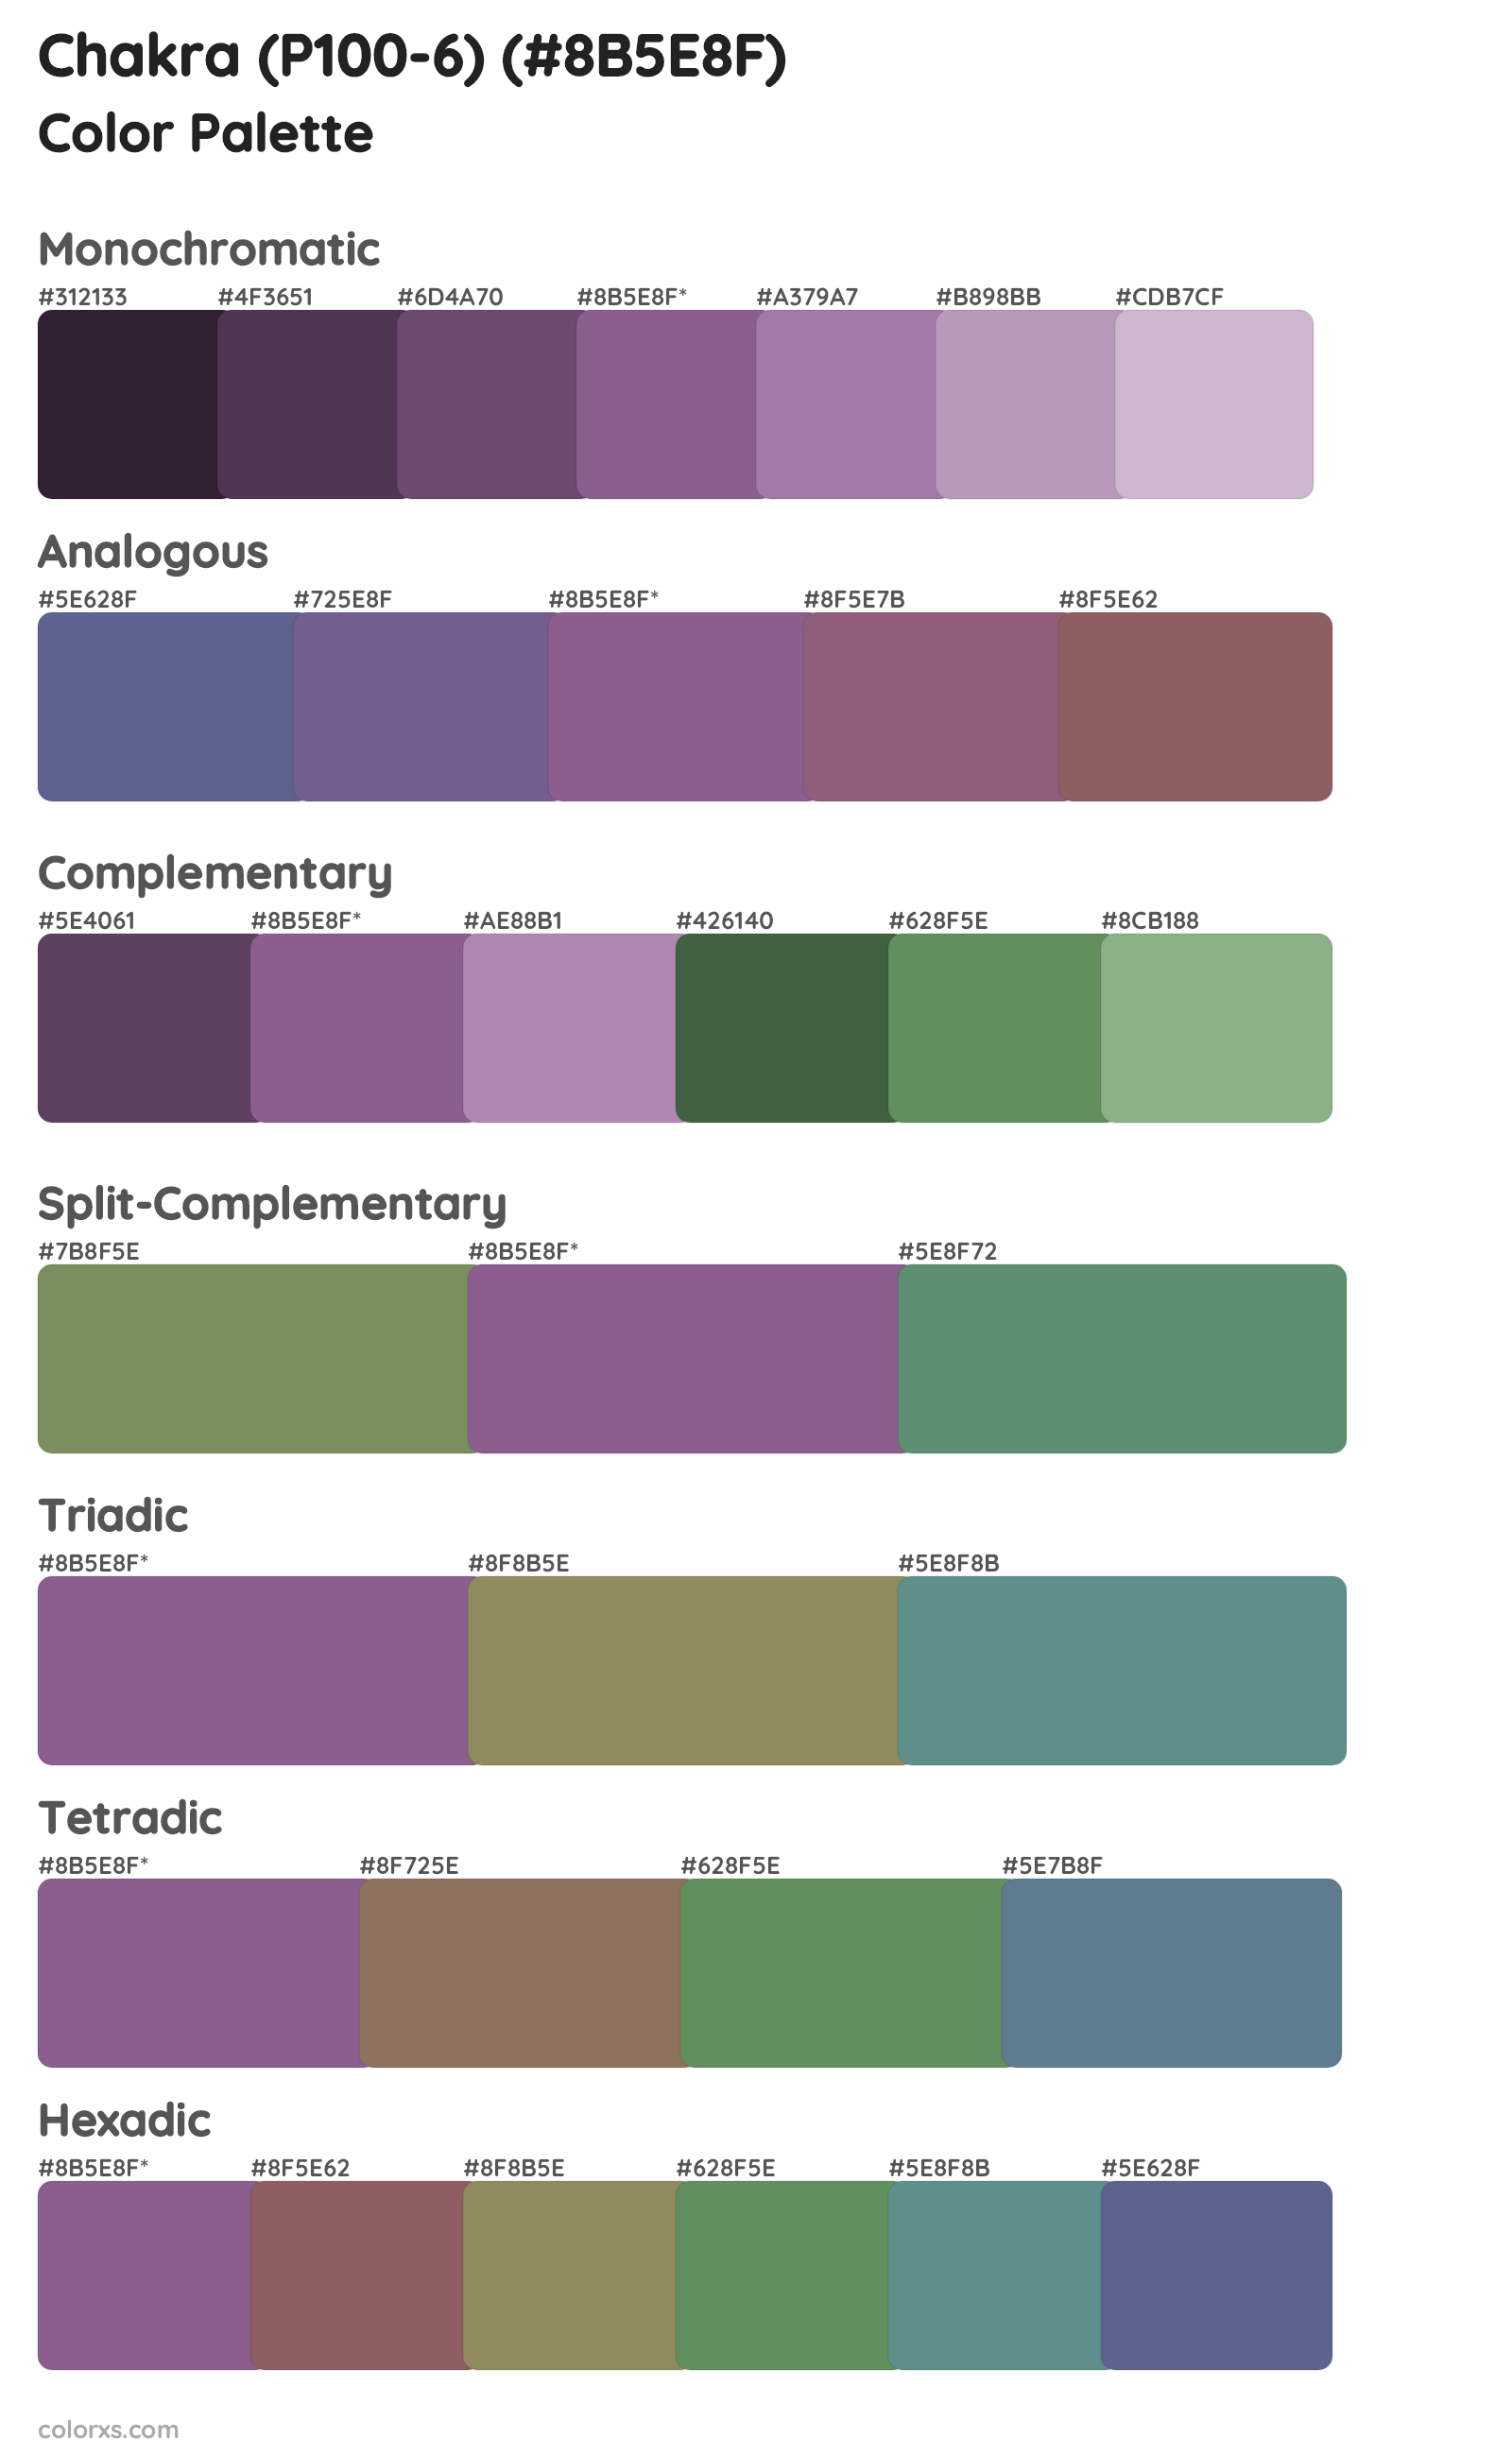 Chakra (P100-6) Color Scheme Palettes